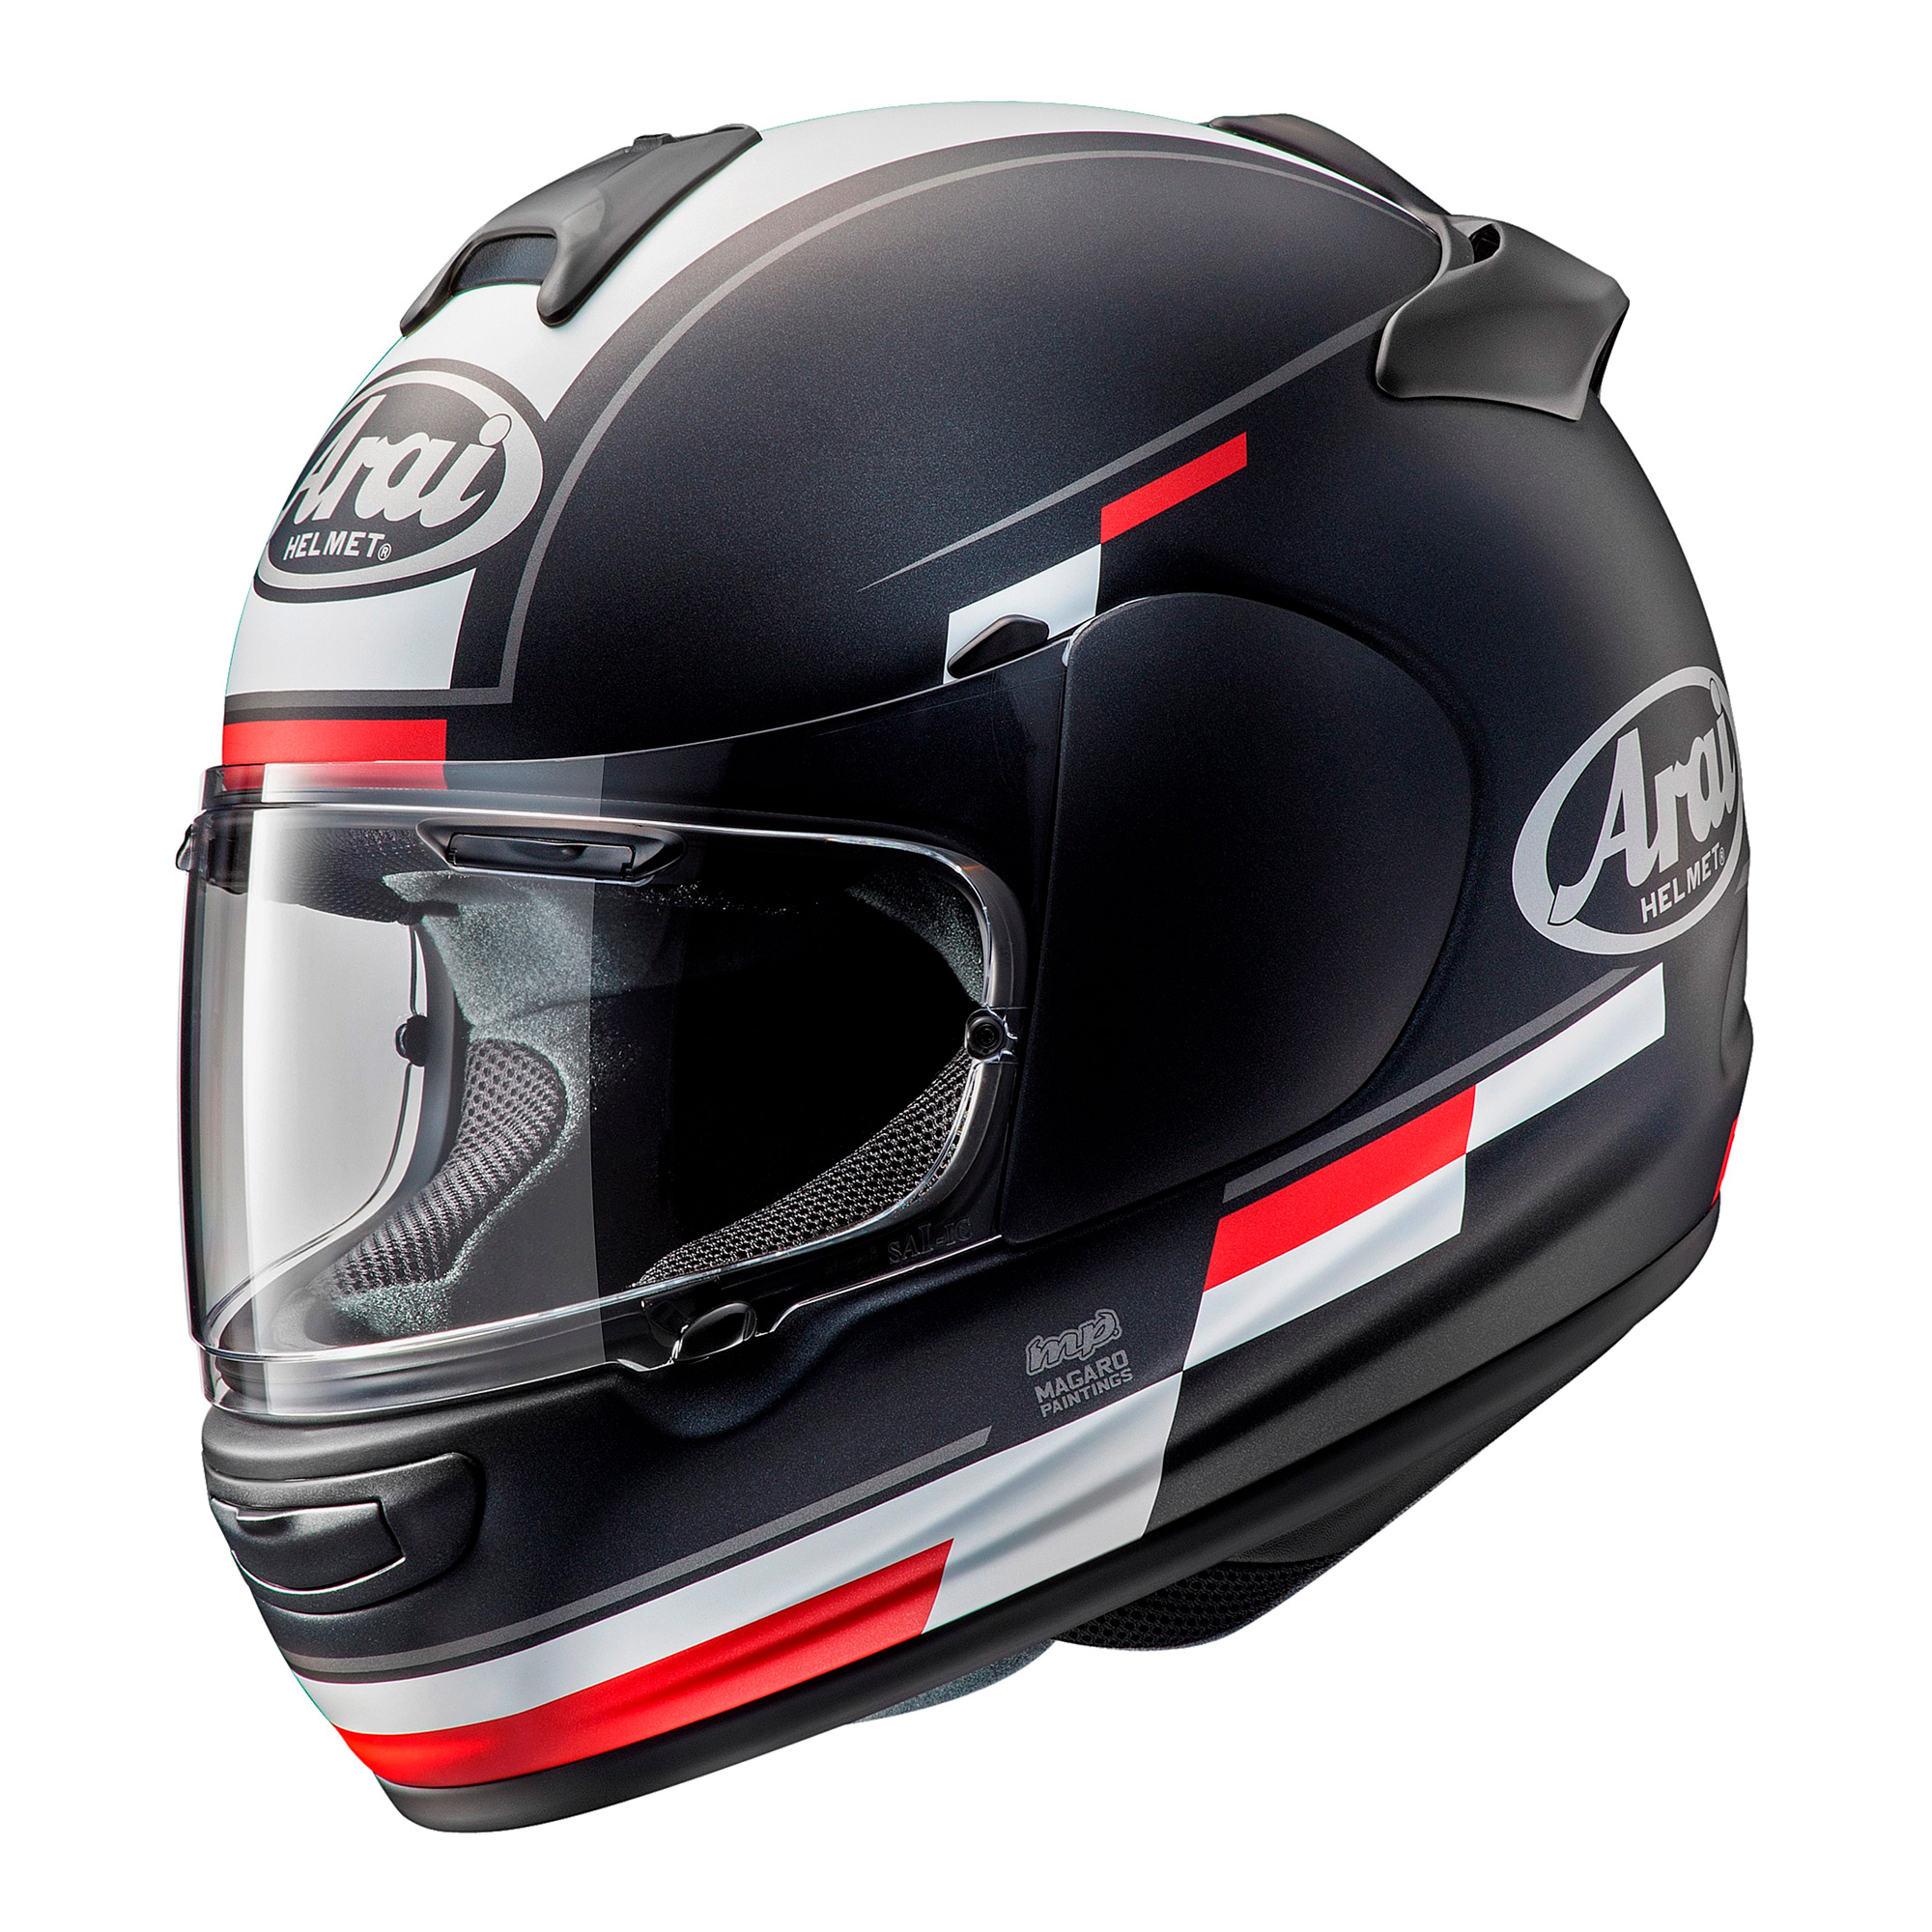 ECE 22.05 Motorcycle Helmets - RevZilla